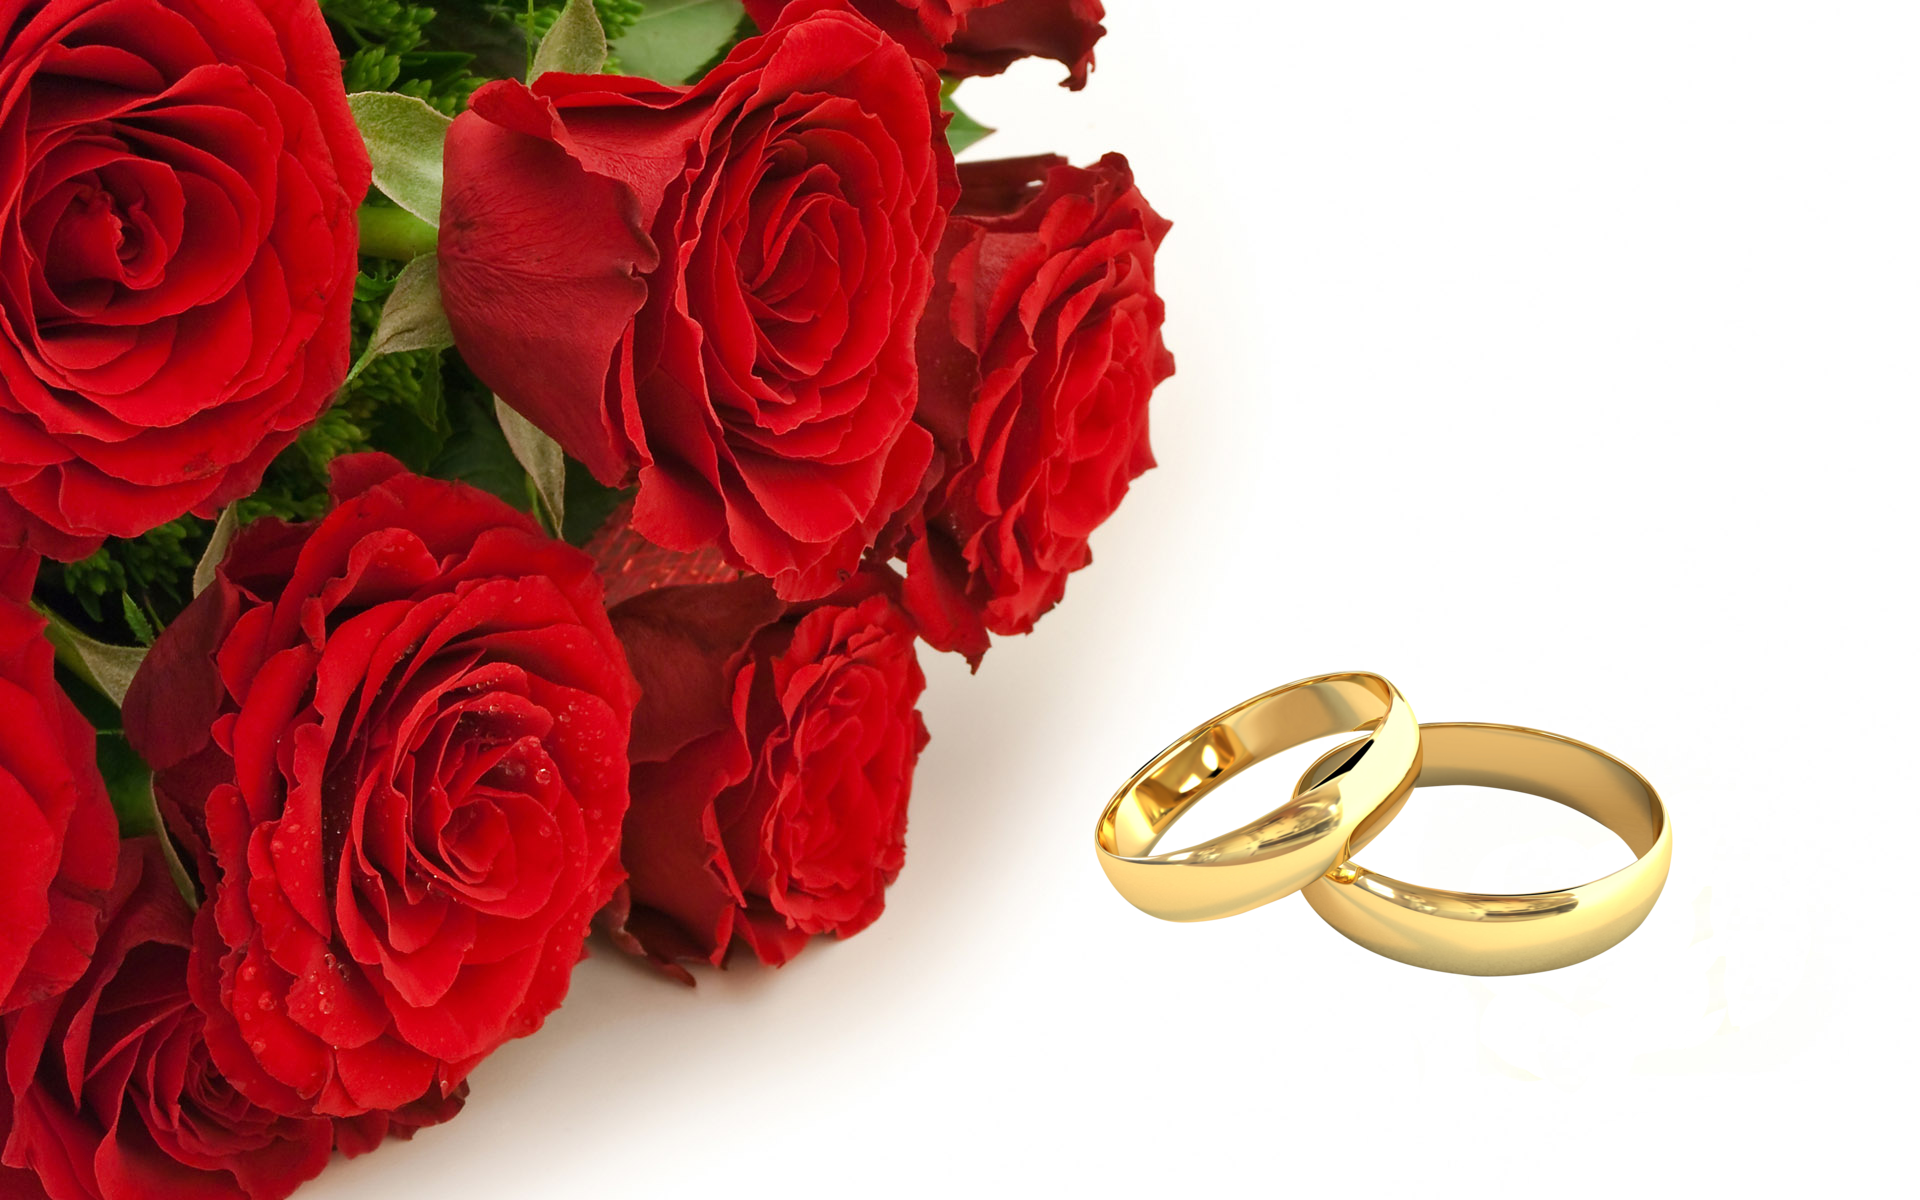 Оригинальные поздравления на 10 лет свадьбы в стихах ~ все пожелания и поздравления на сайте праздникоff